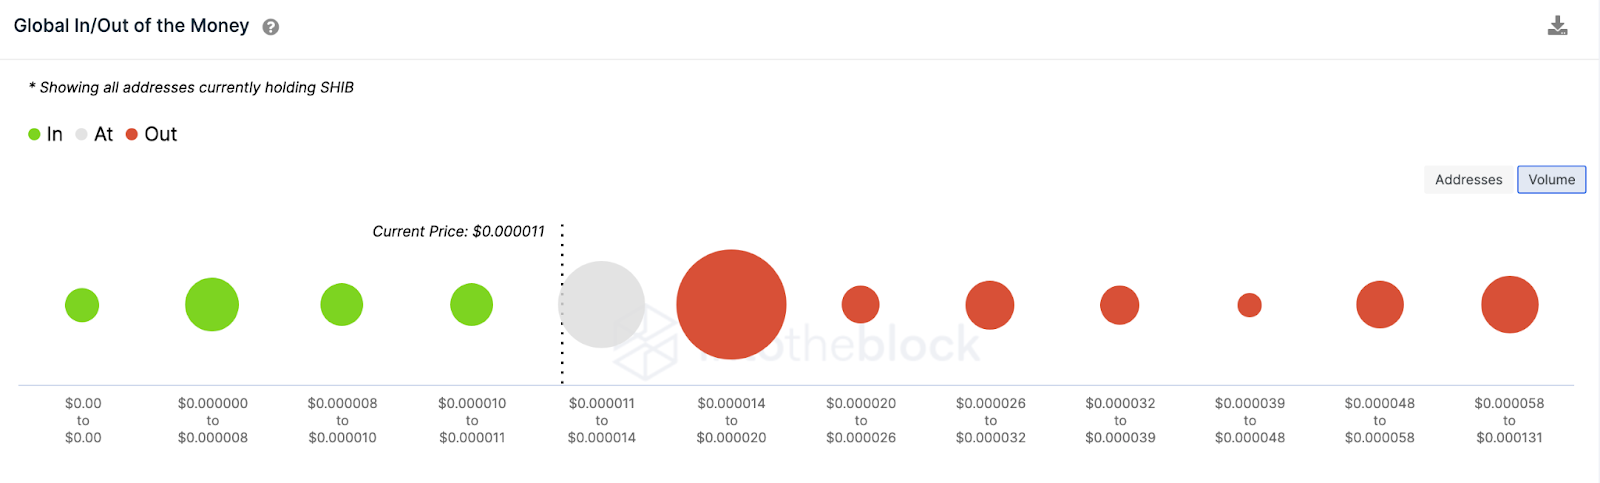 Shiba Inu (SHIB) Dados globais In/Out of Money. março de 2023